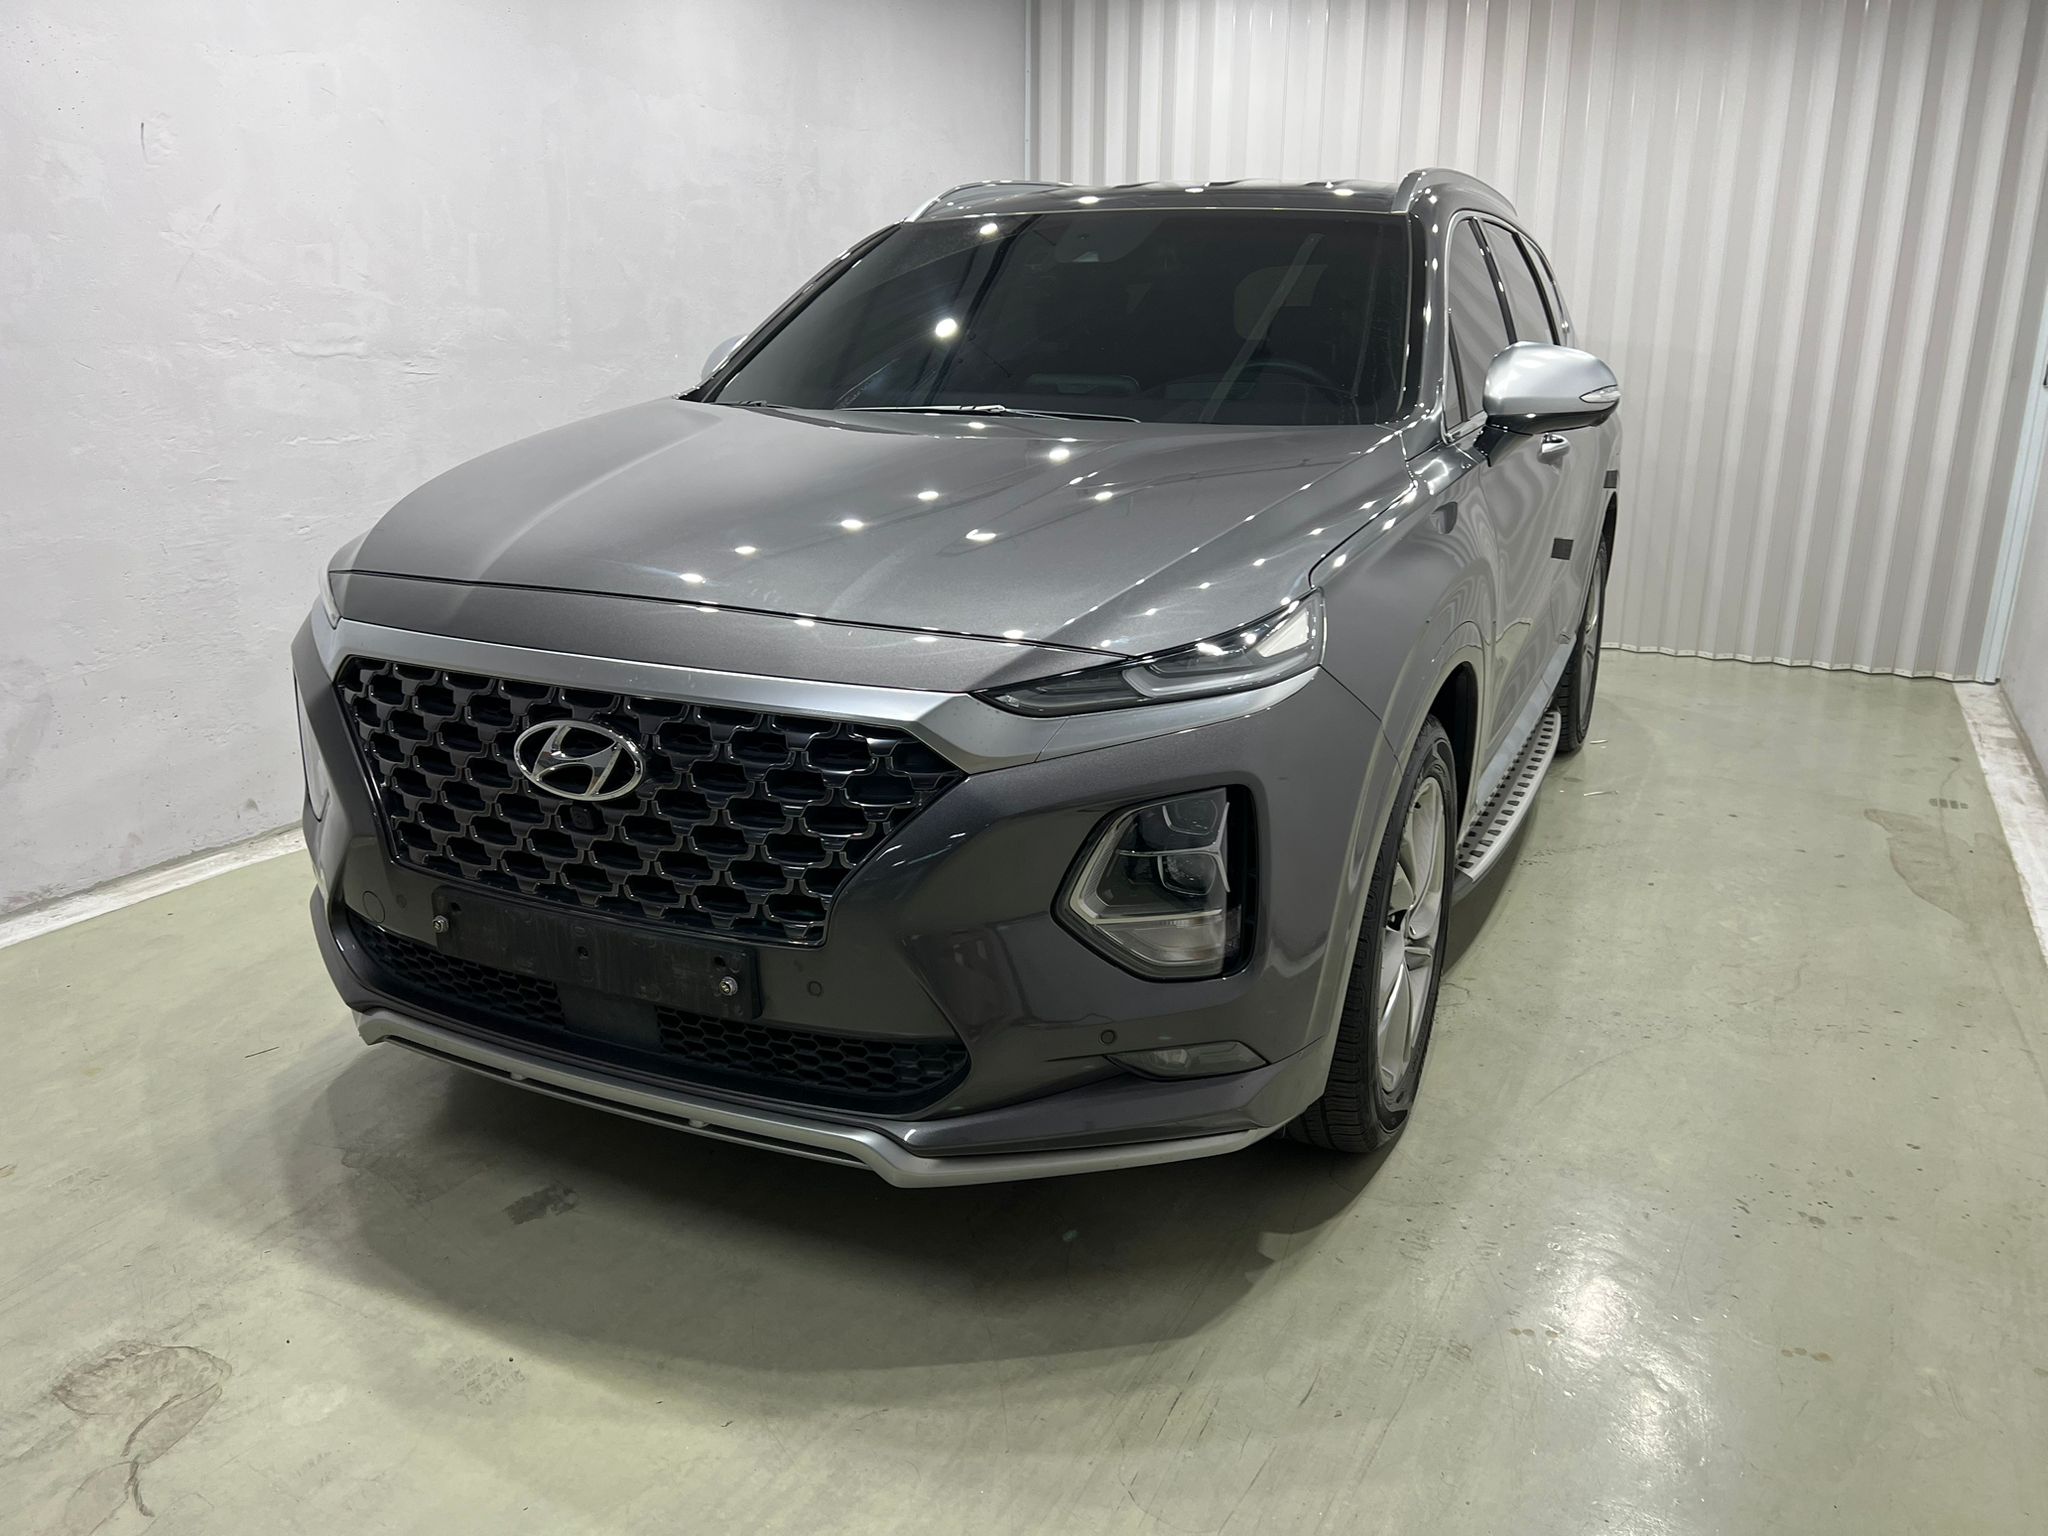 Hyundai SantaFE 4WD Inspiration, 2019 год, дизель 2,2 пробег 64700 км. Ориентировочная стоимость автомобиля в Москве с учетом таможенной пошлины и пр. платежей 3 500 000 руб.